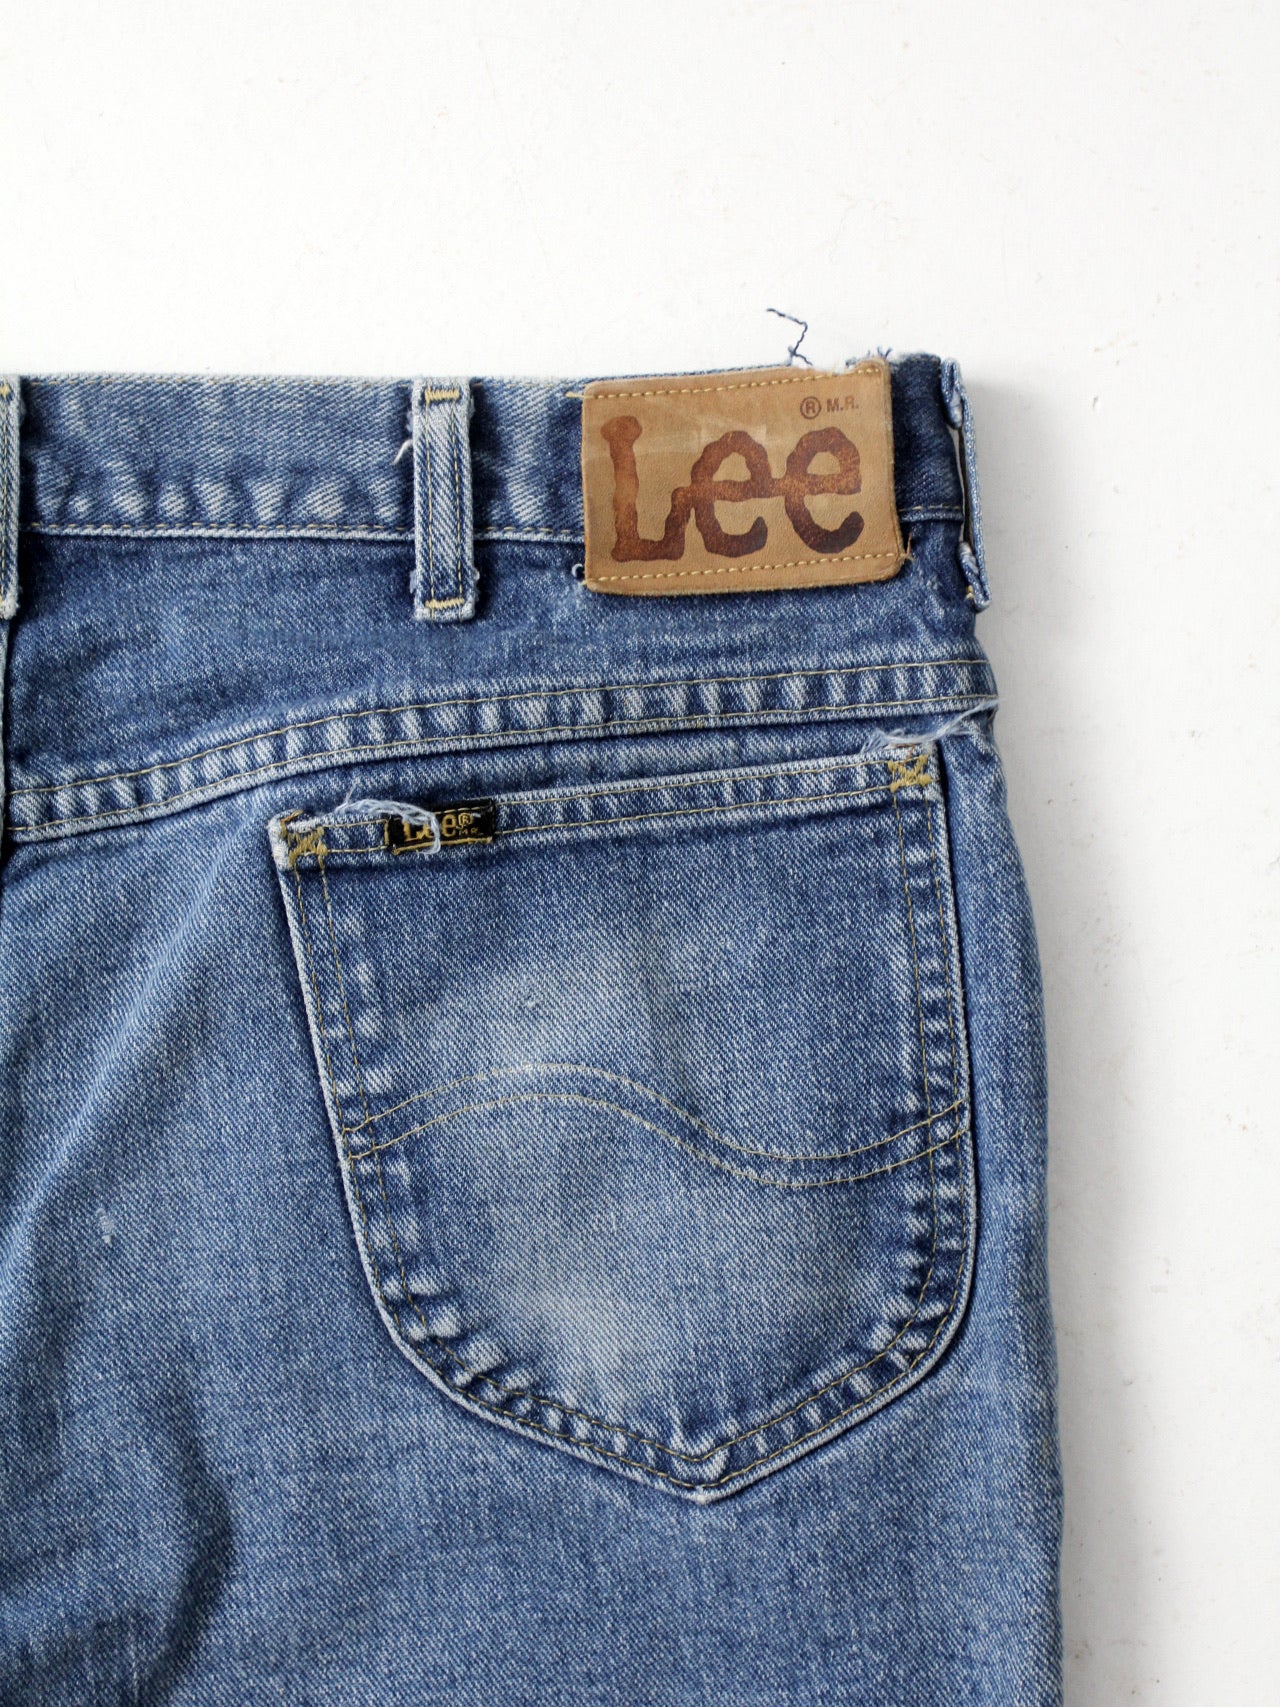 vintage Riders denim jeans 37 x – 86 Vintage